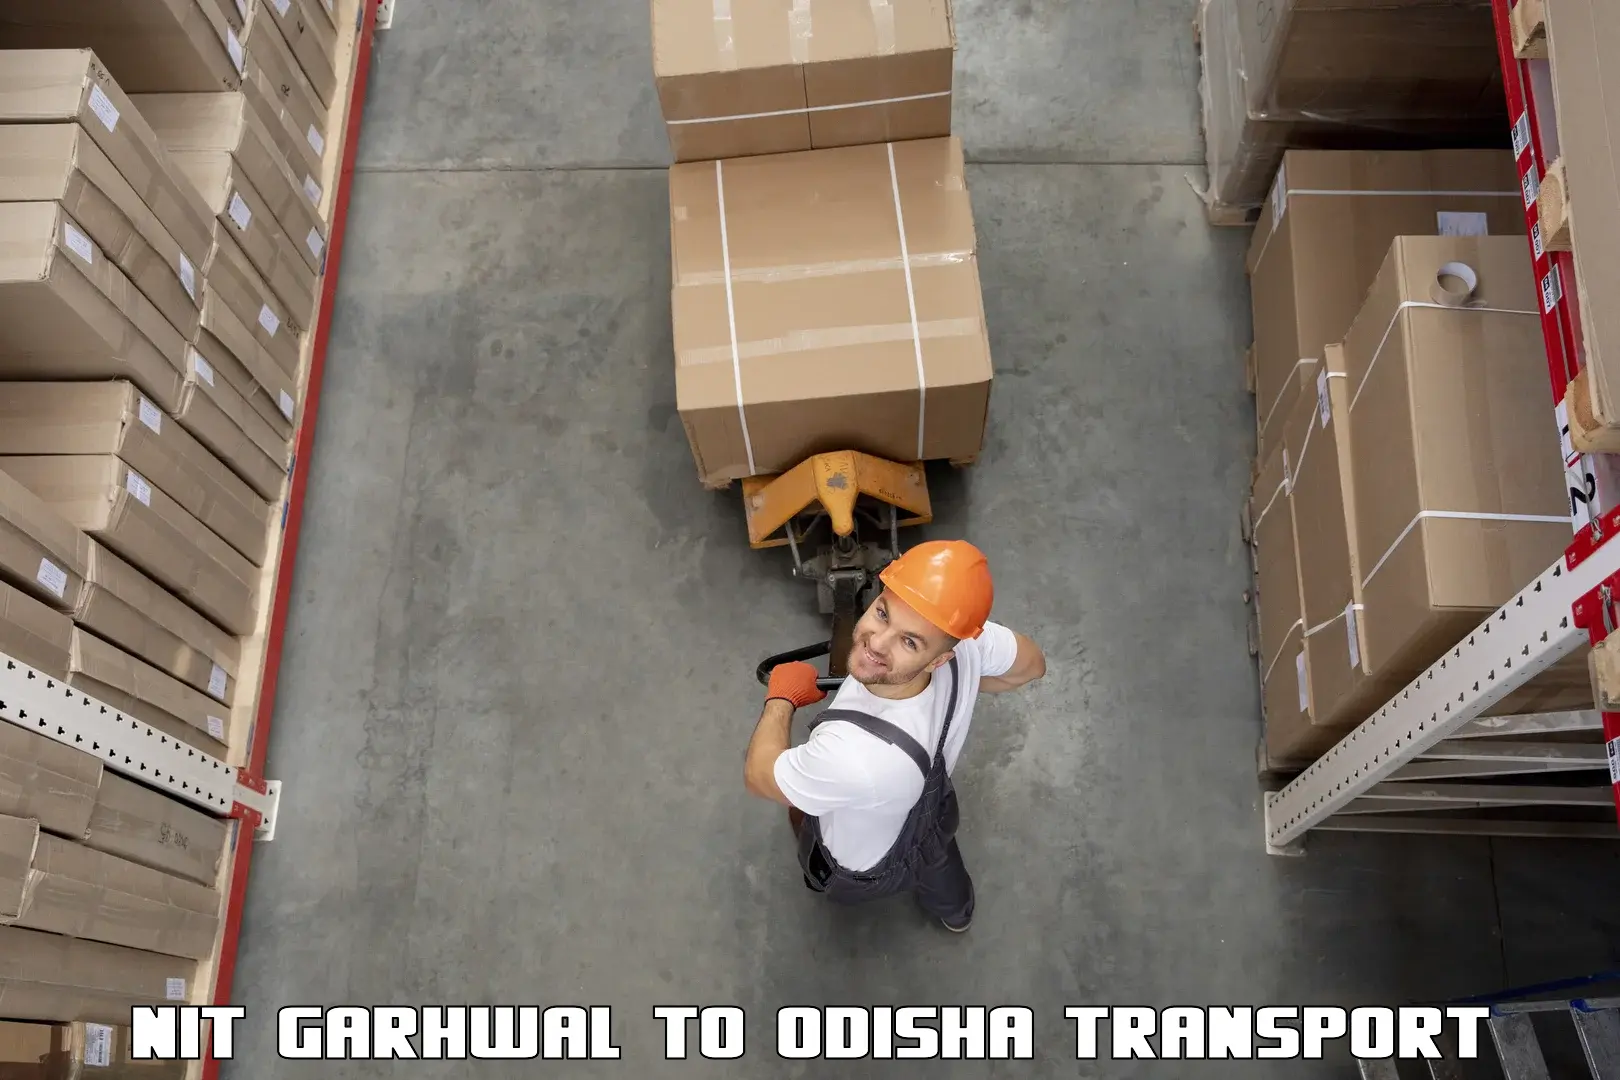 Furniture transport service NIT Garhwal to Gumadera